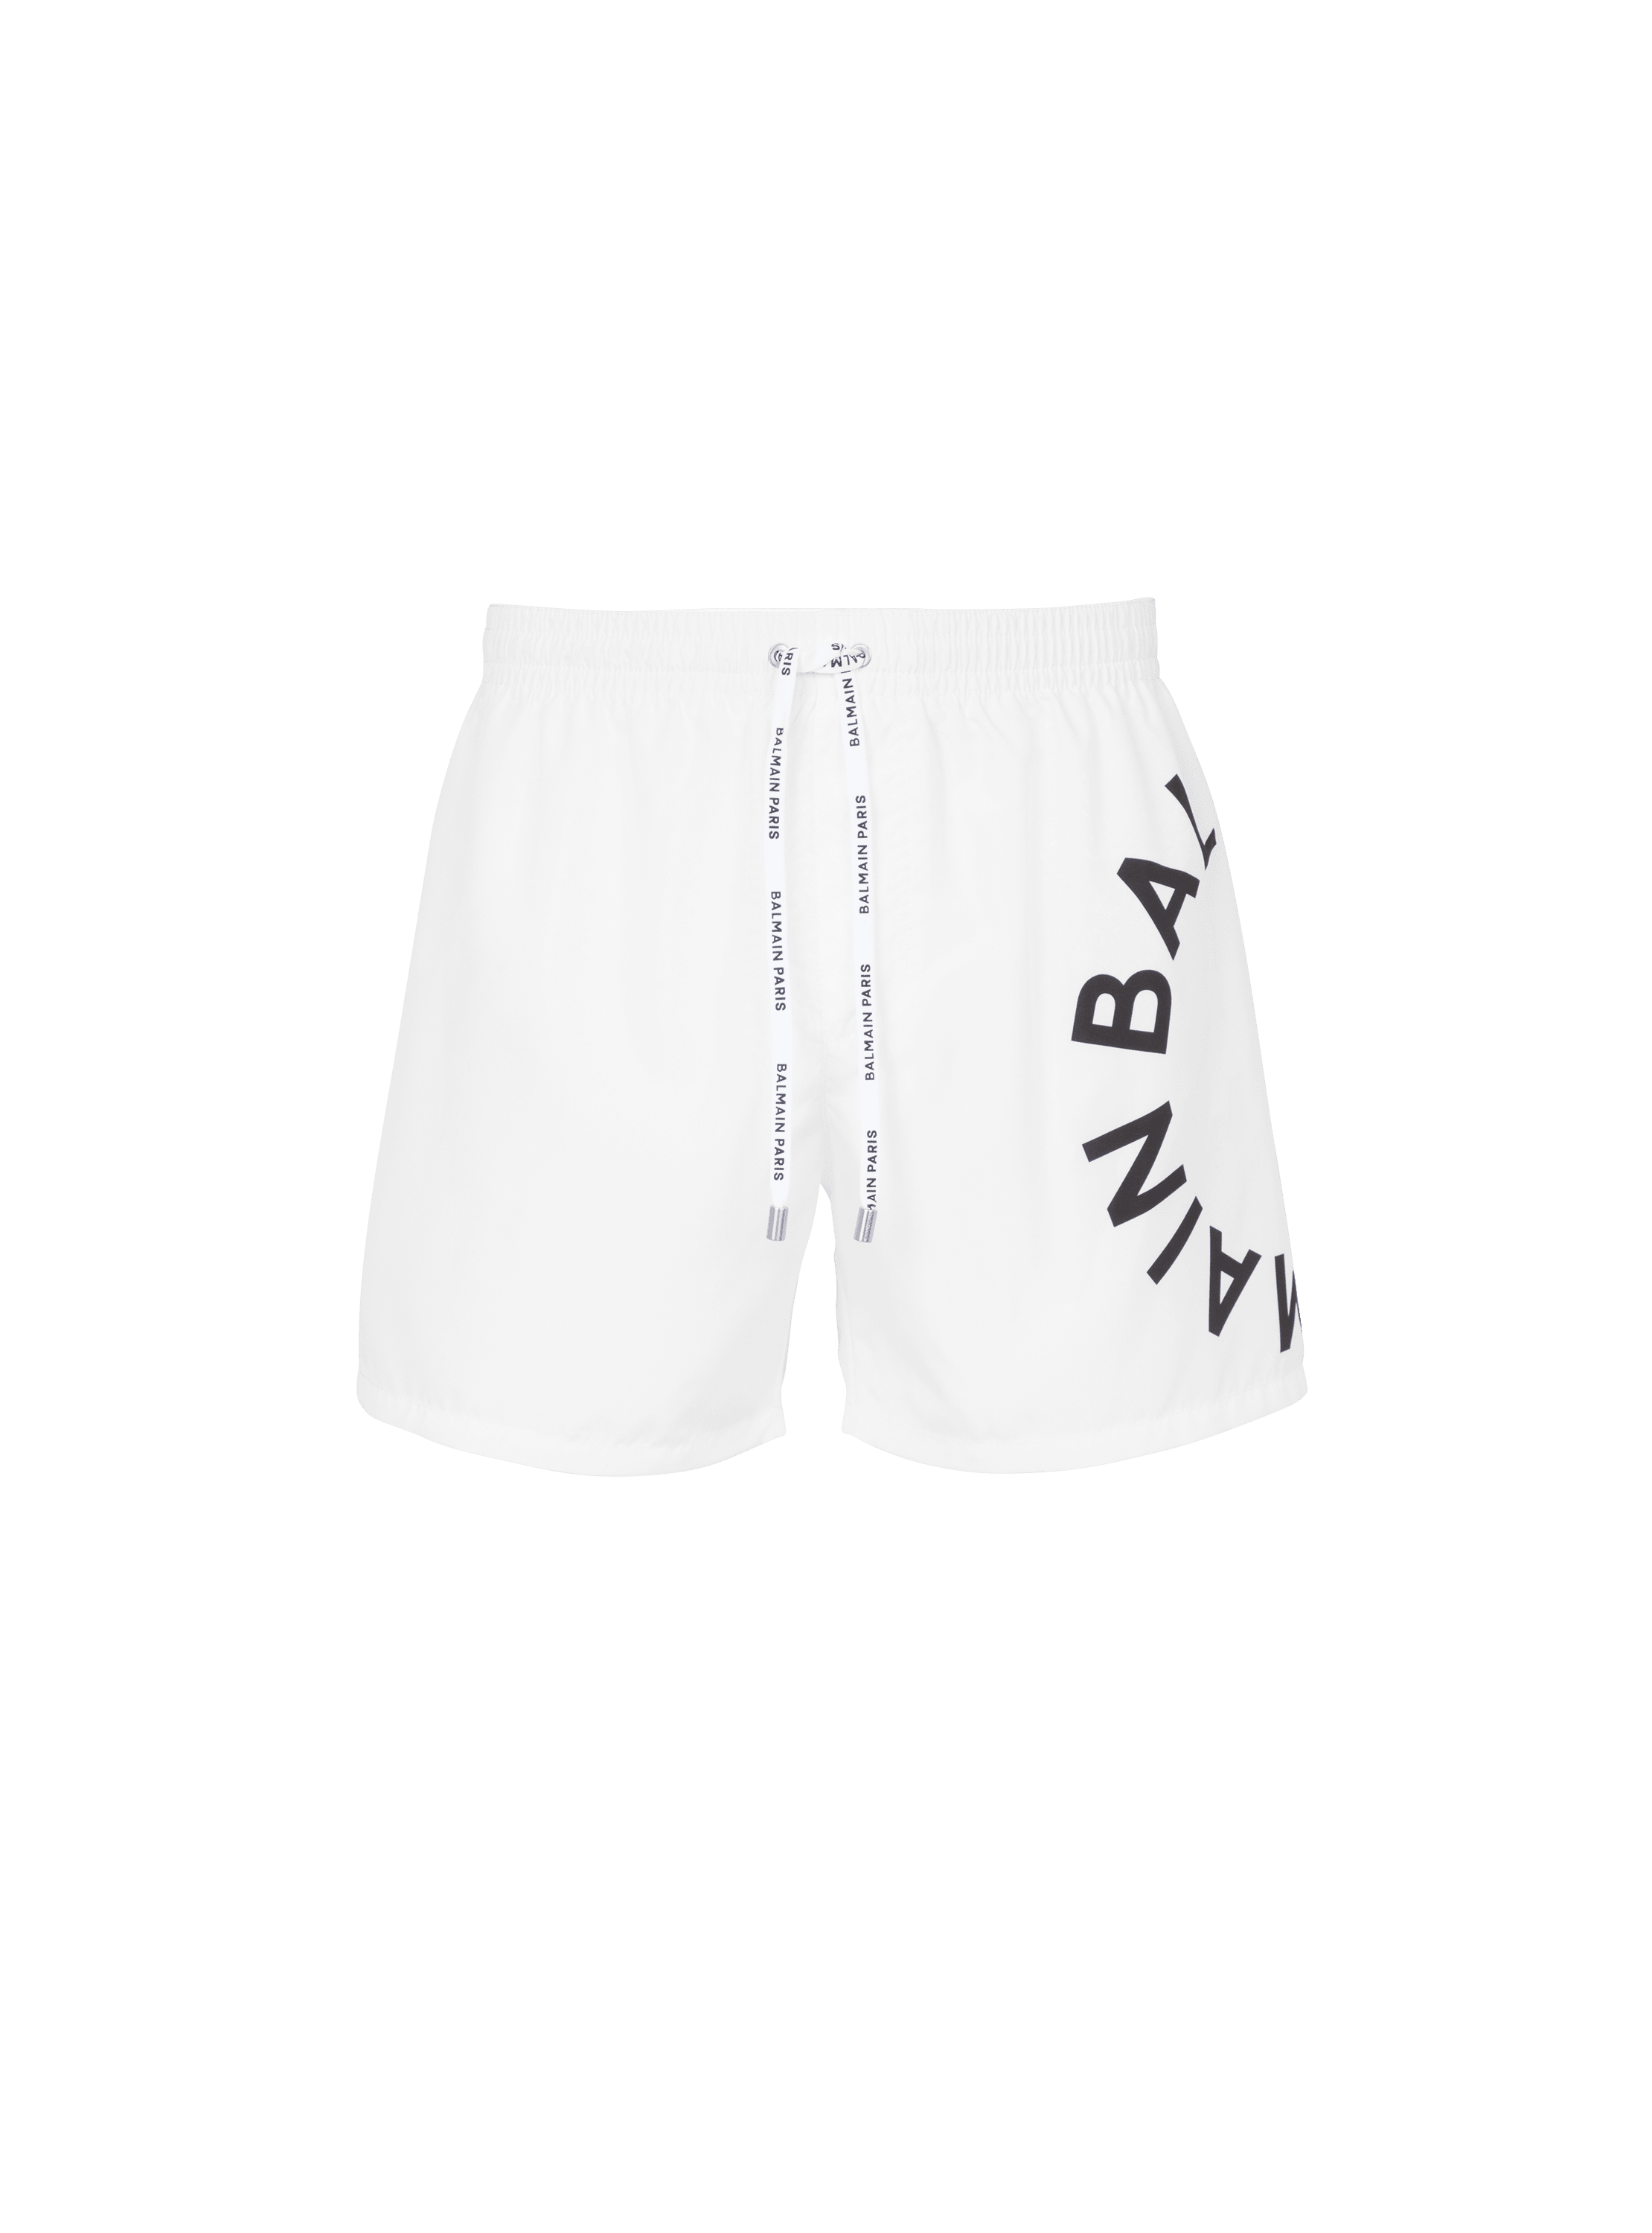 Balmain swim shorts, white, hi-res